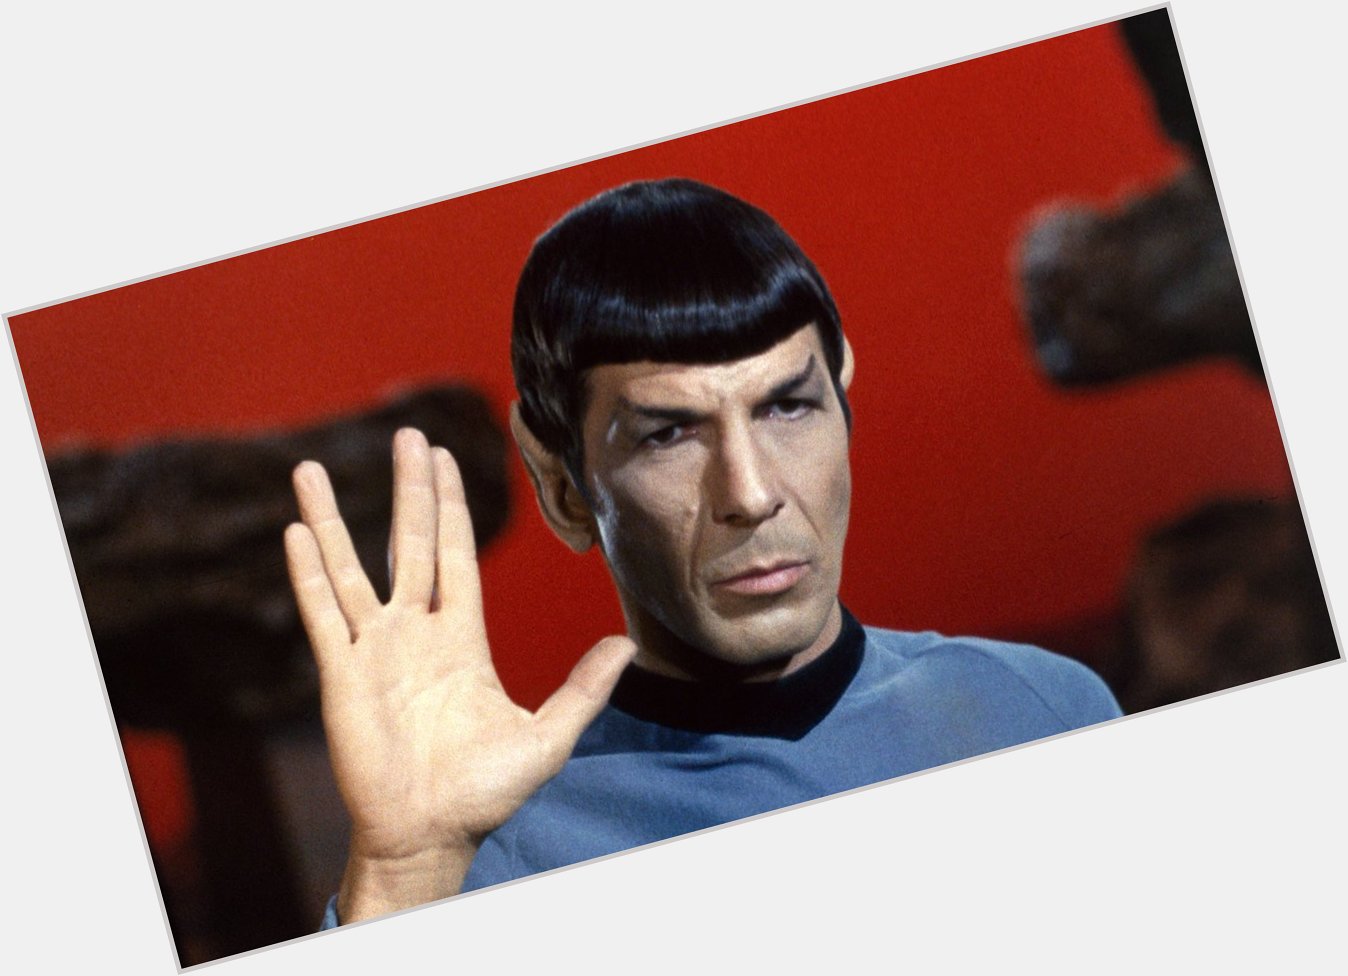 Happy Birthday Leonard Nimoy
(26/03/1931 - 27/02/2015) Spock 